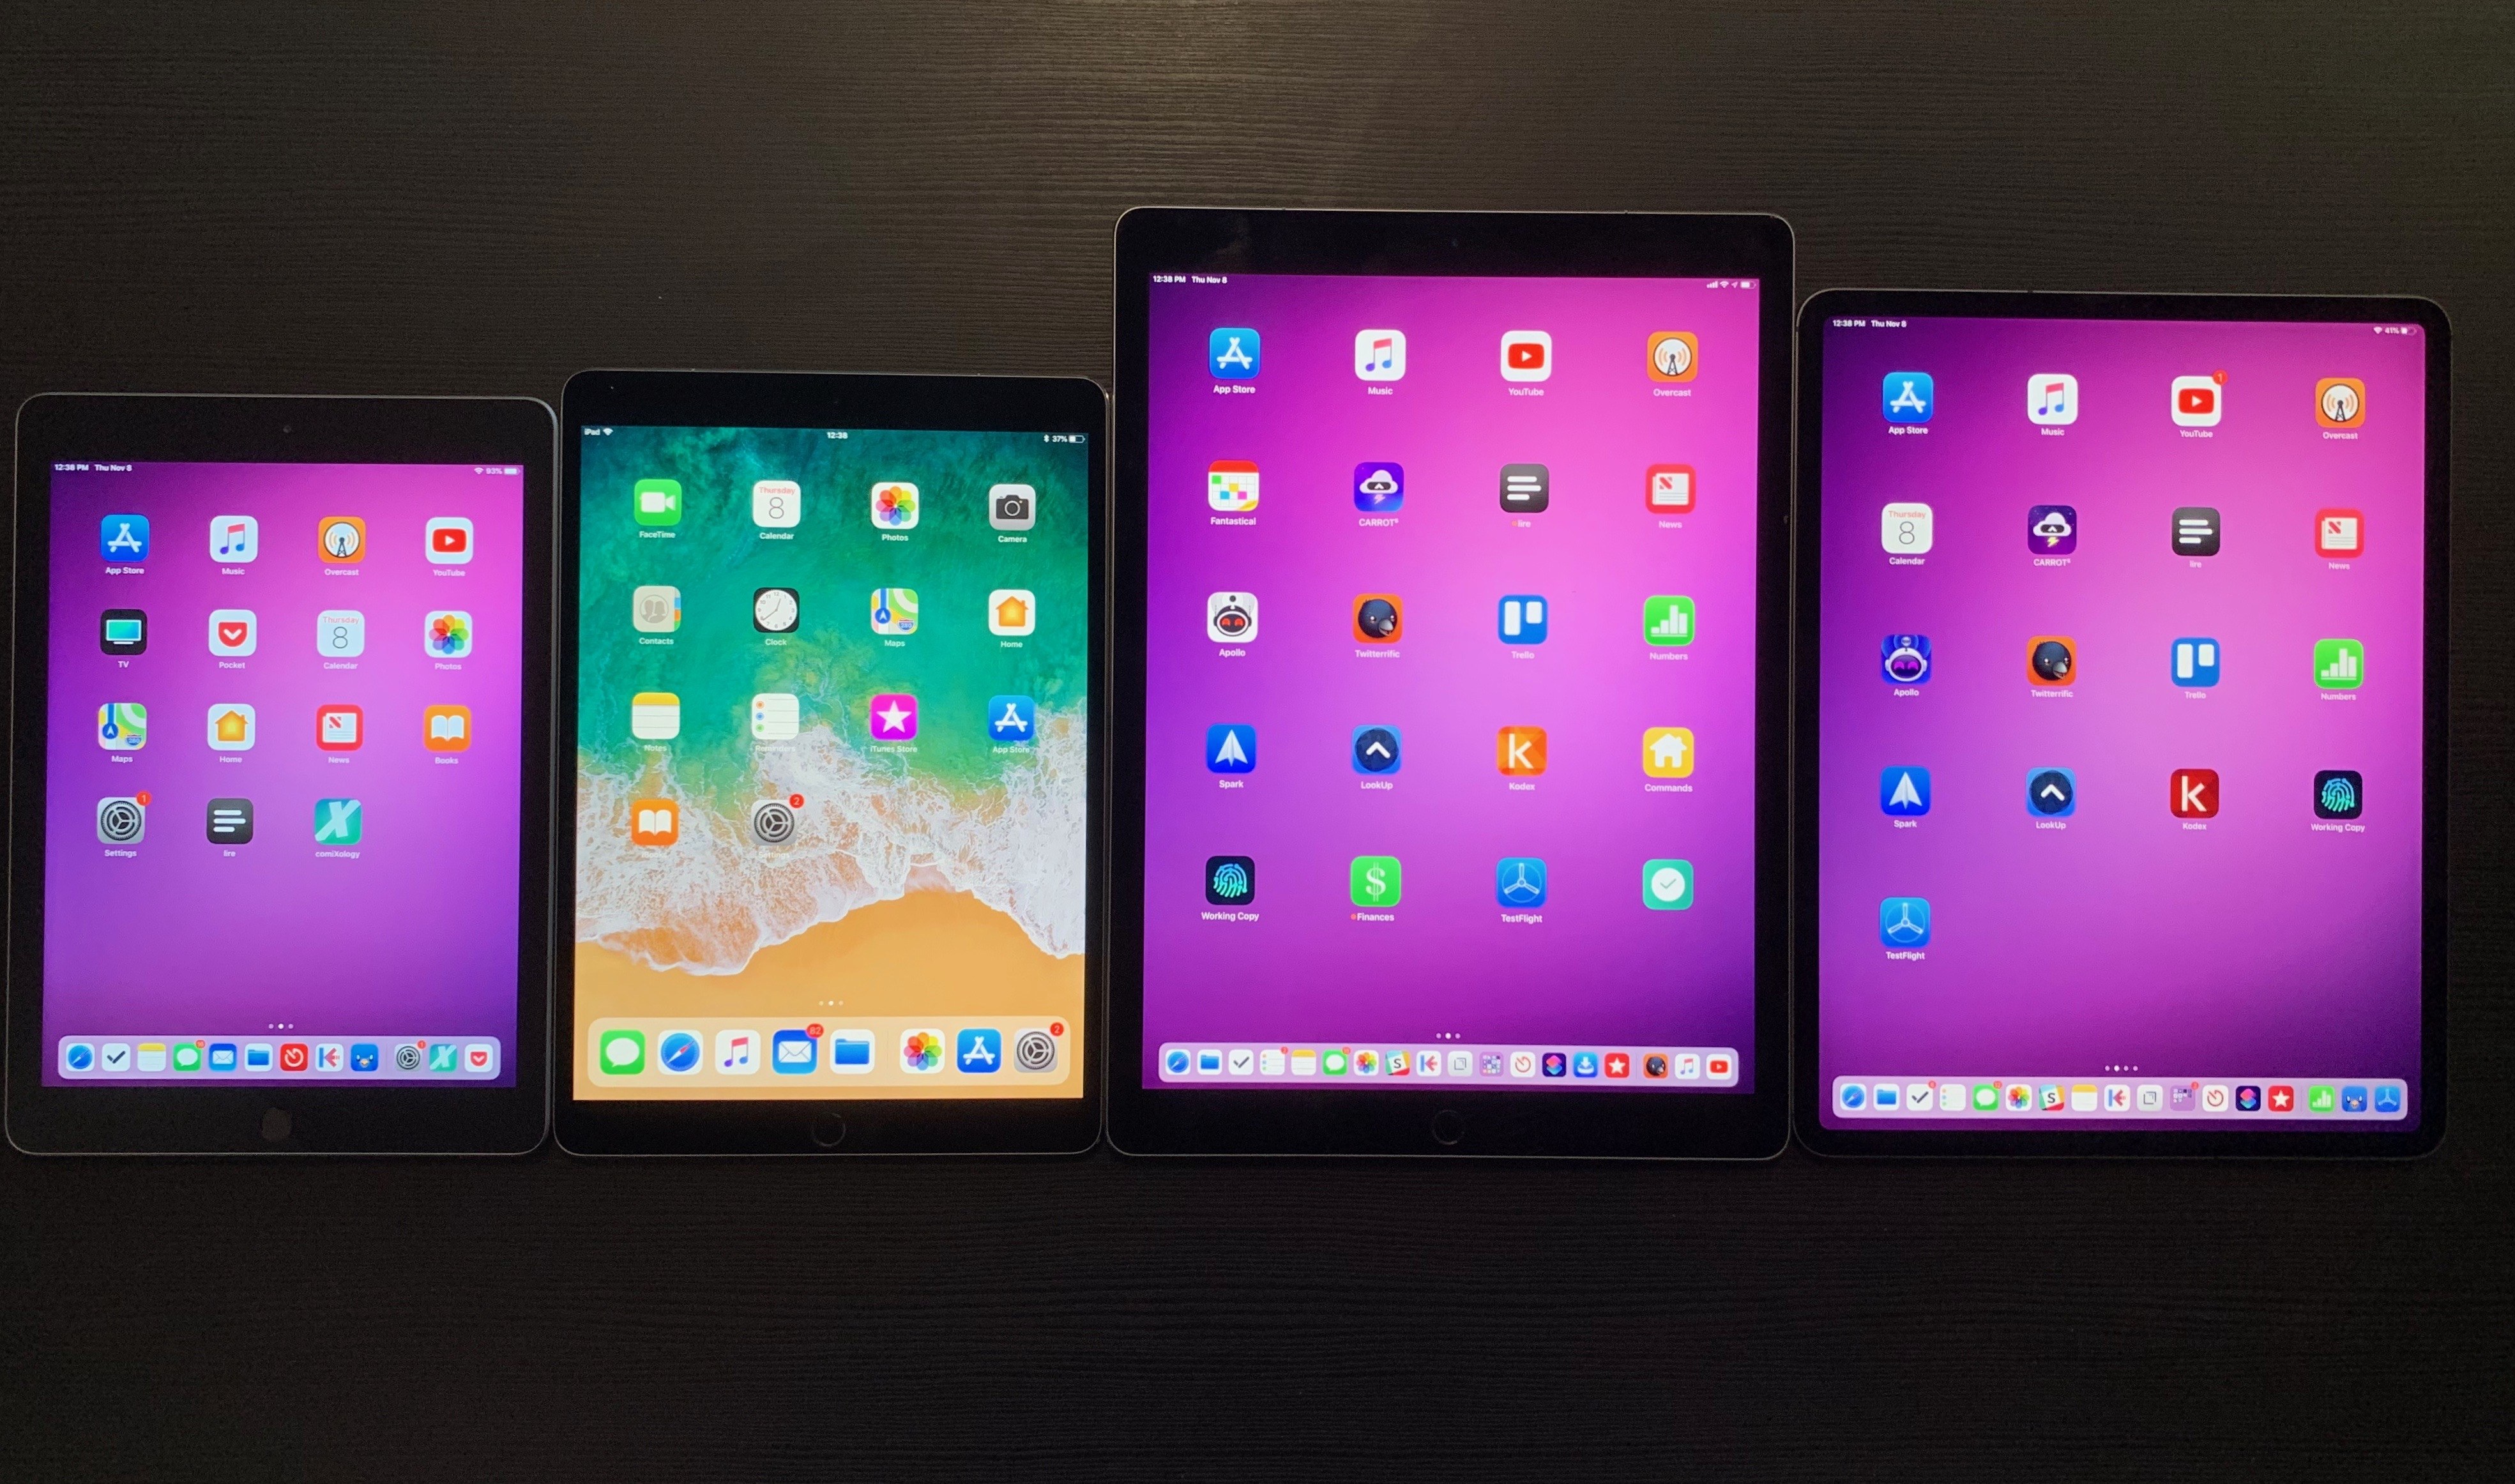 Left to right: the 6th generation iPad, 10.5" iPad Pro, 2017 12.9" iPad Pro, and the 2018 12.9" iPad Pro.